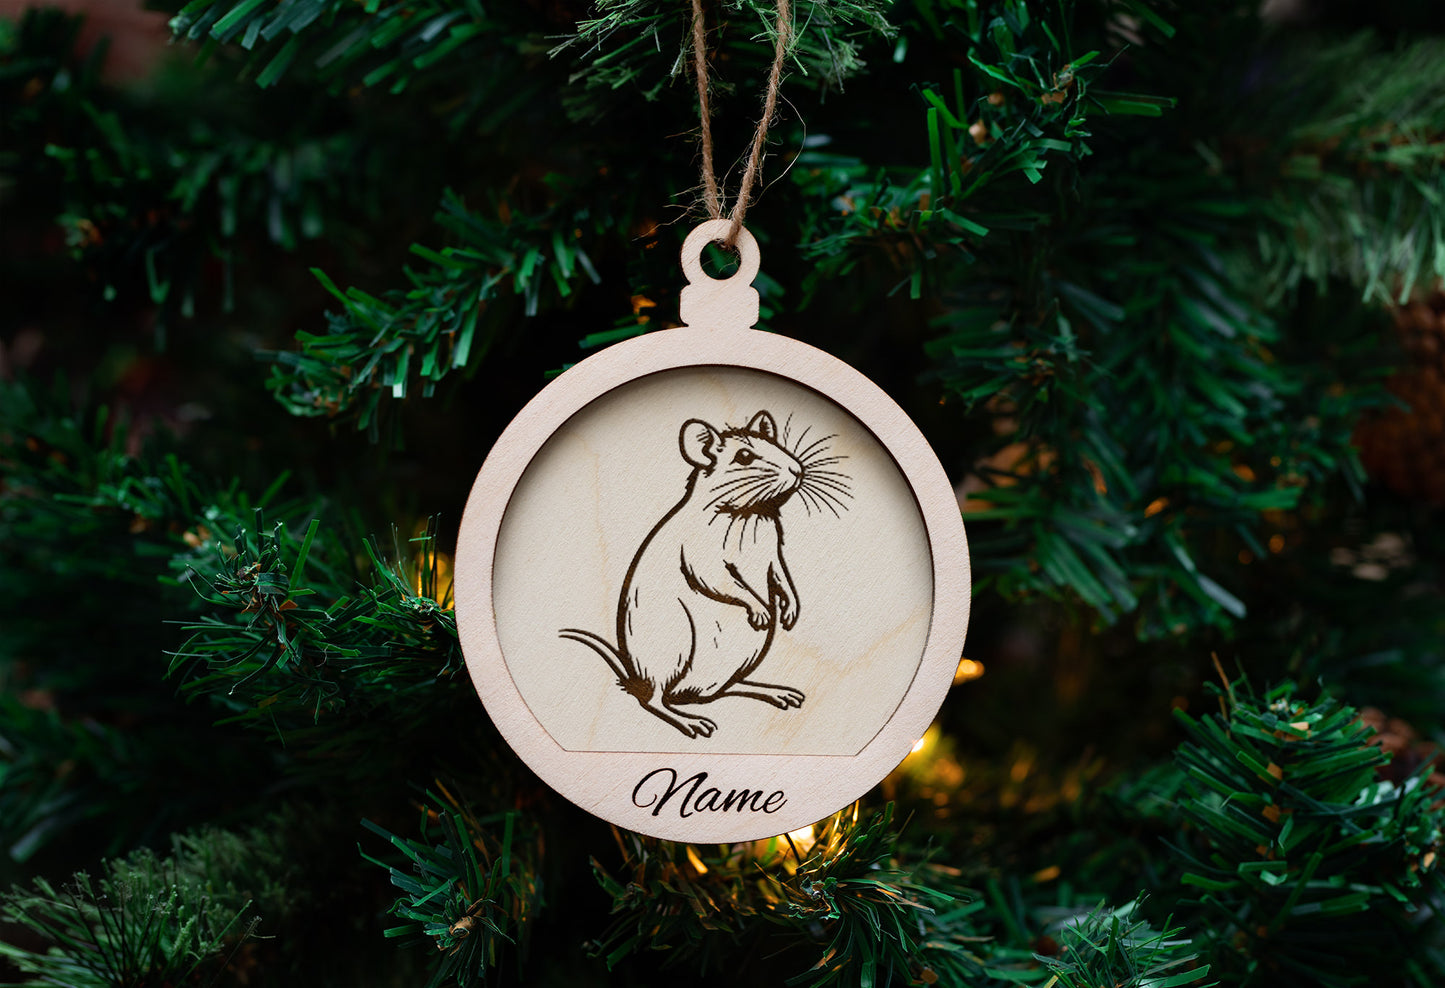 Personalized Engraved Exotic Pet Portrait Ornaments